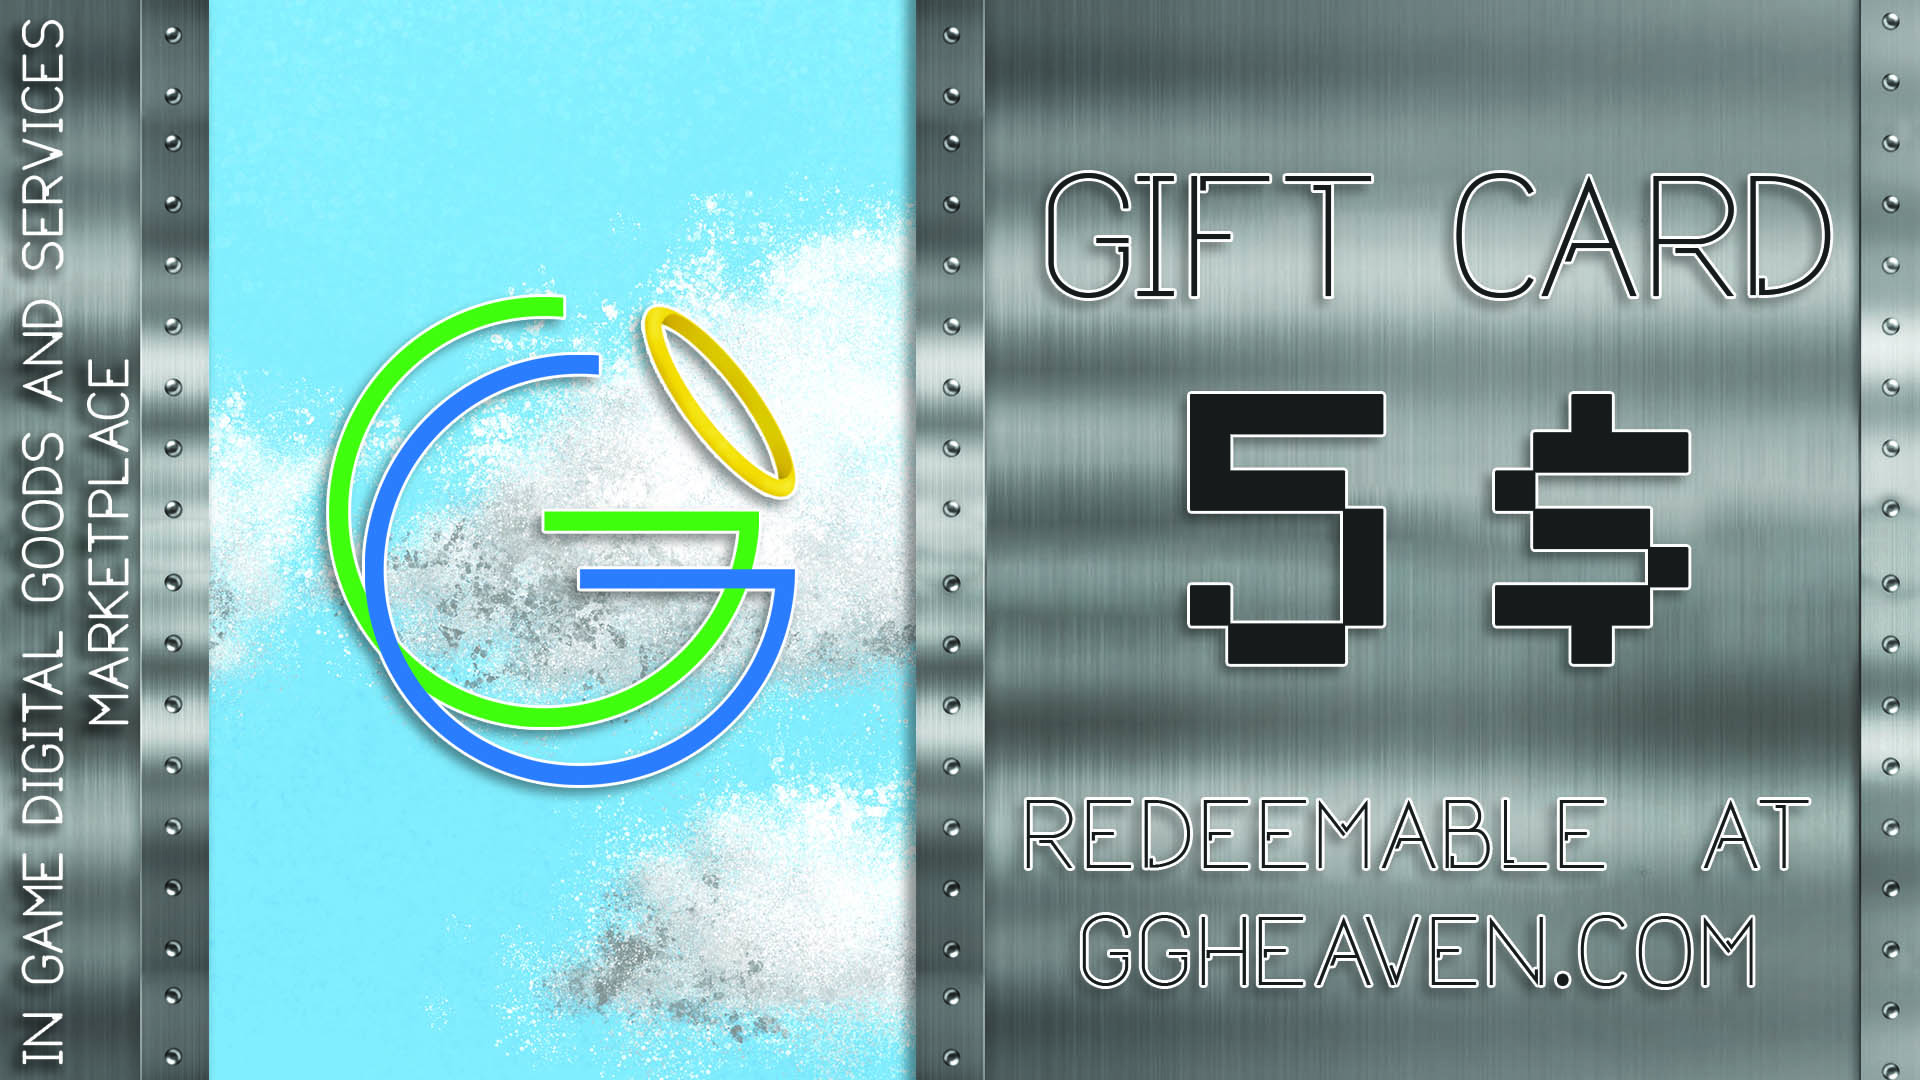 GGHeaven.com 5$ Gift Card, 6.27$